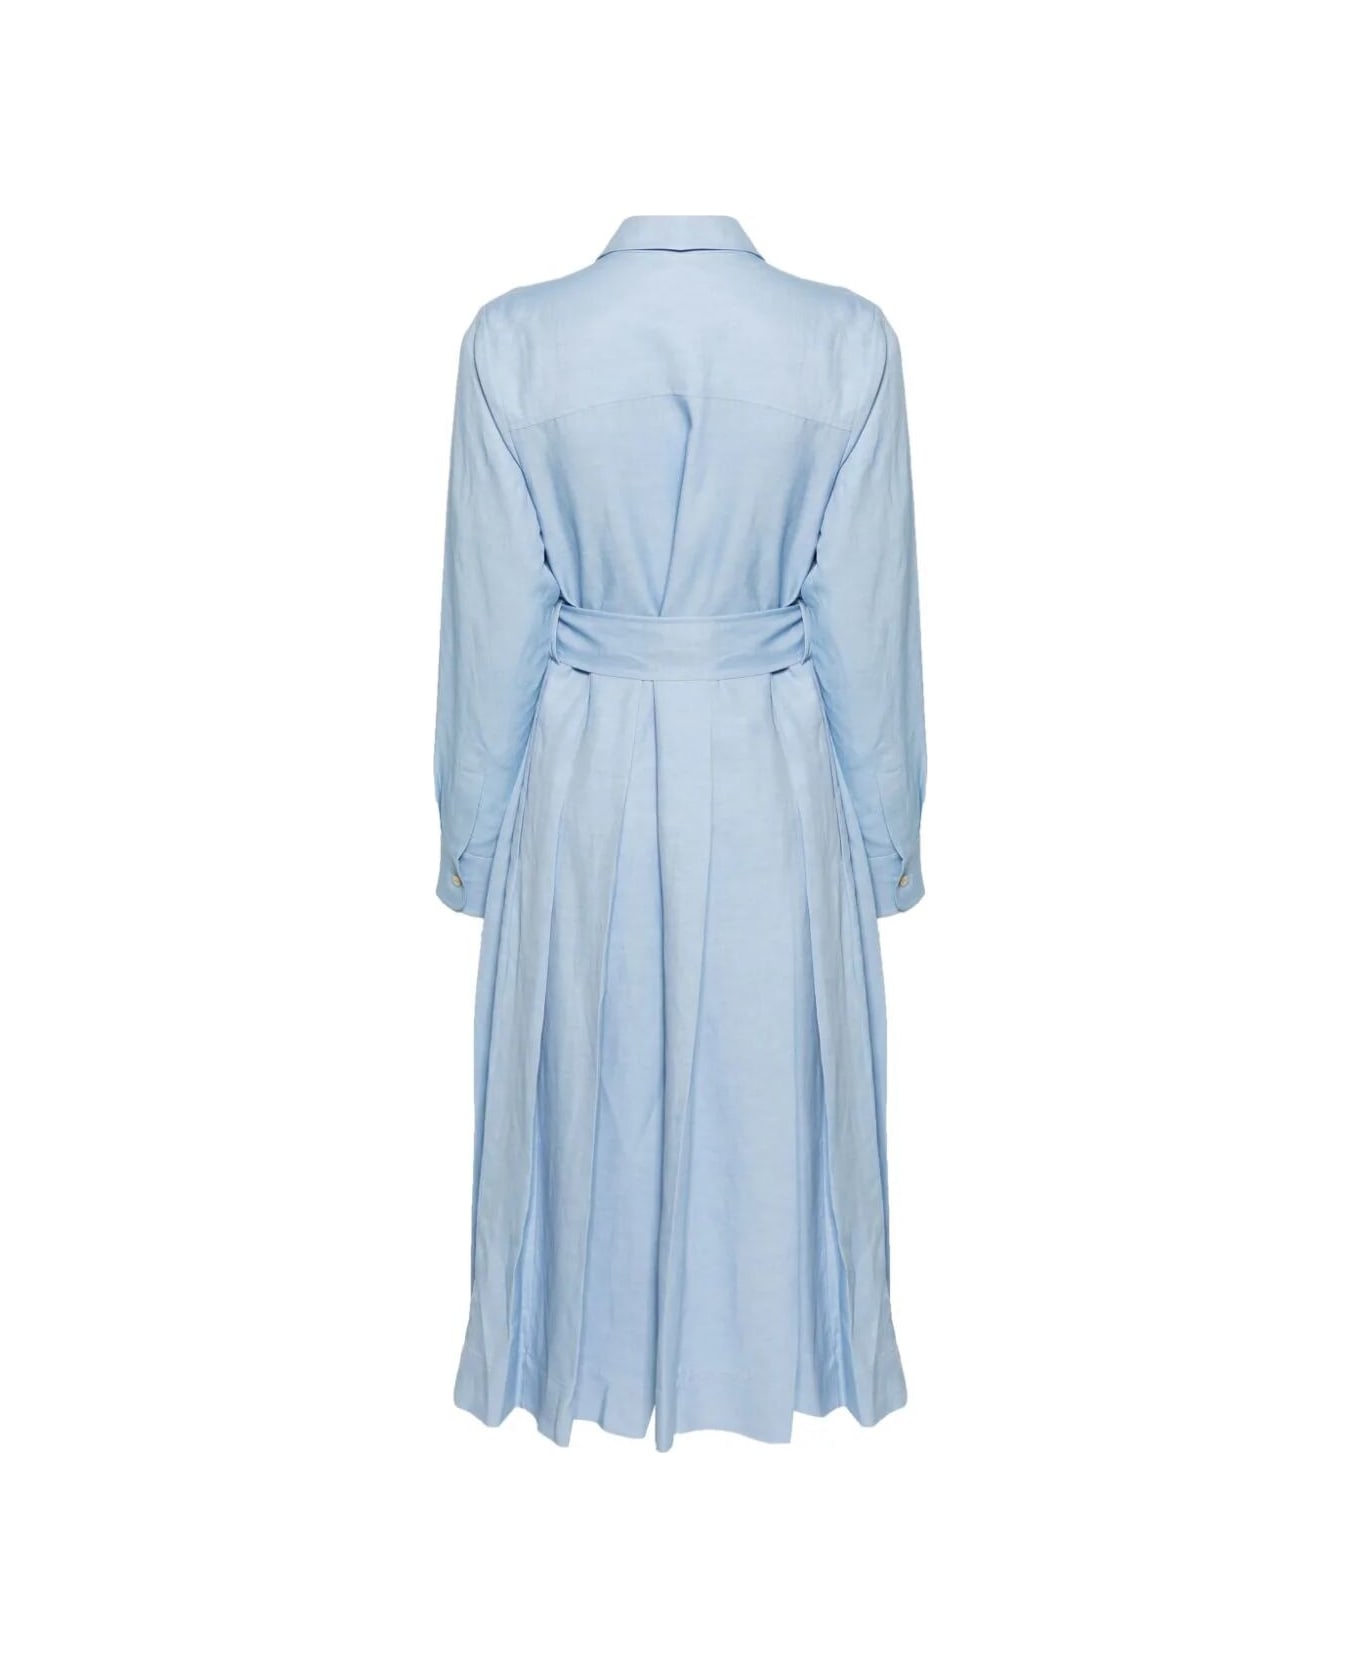 Parosh Long Sleeves Chemisier Dress - Light Blue Dust